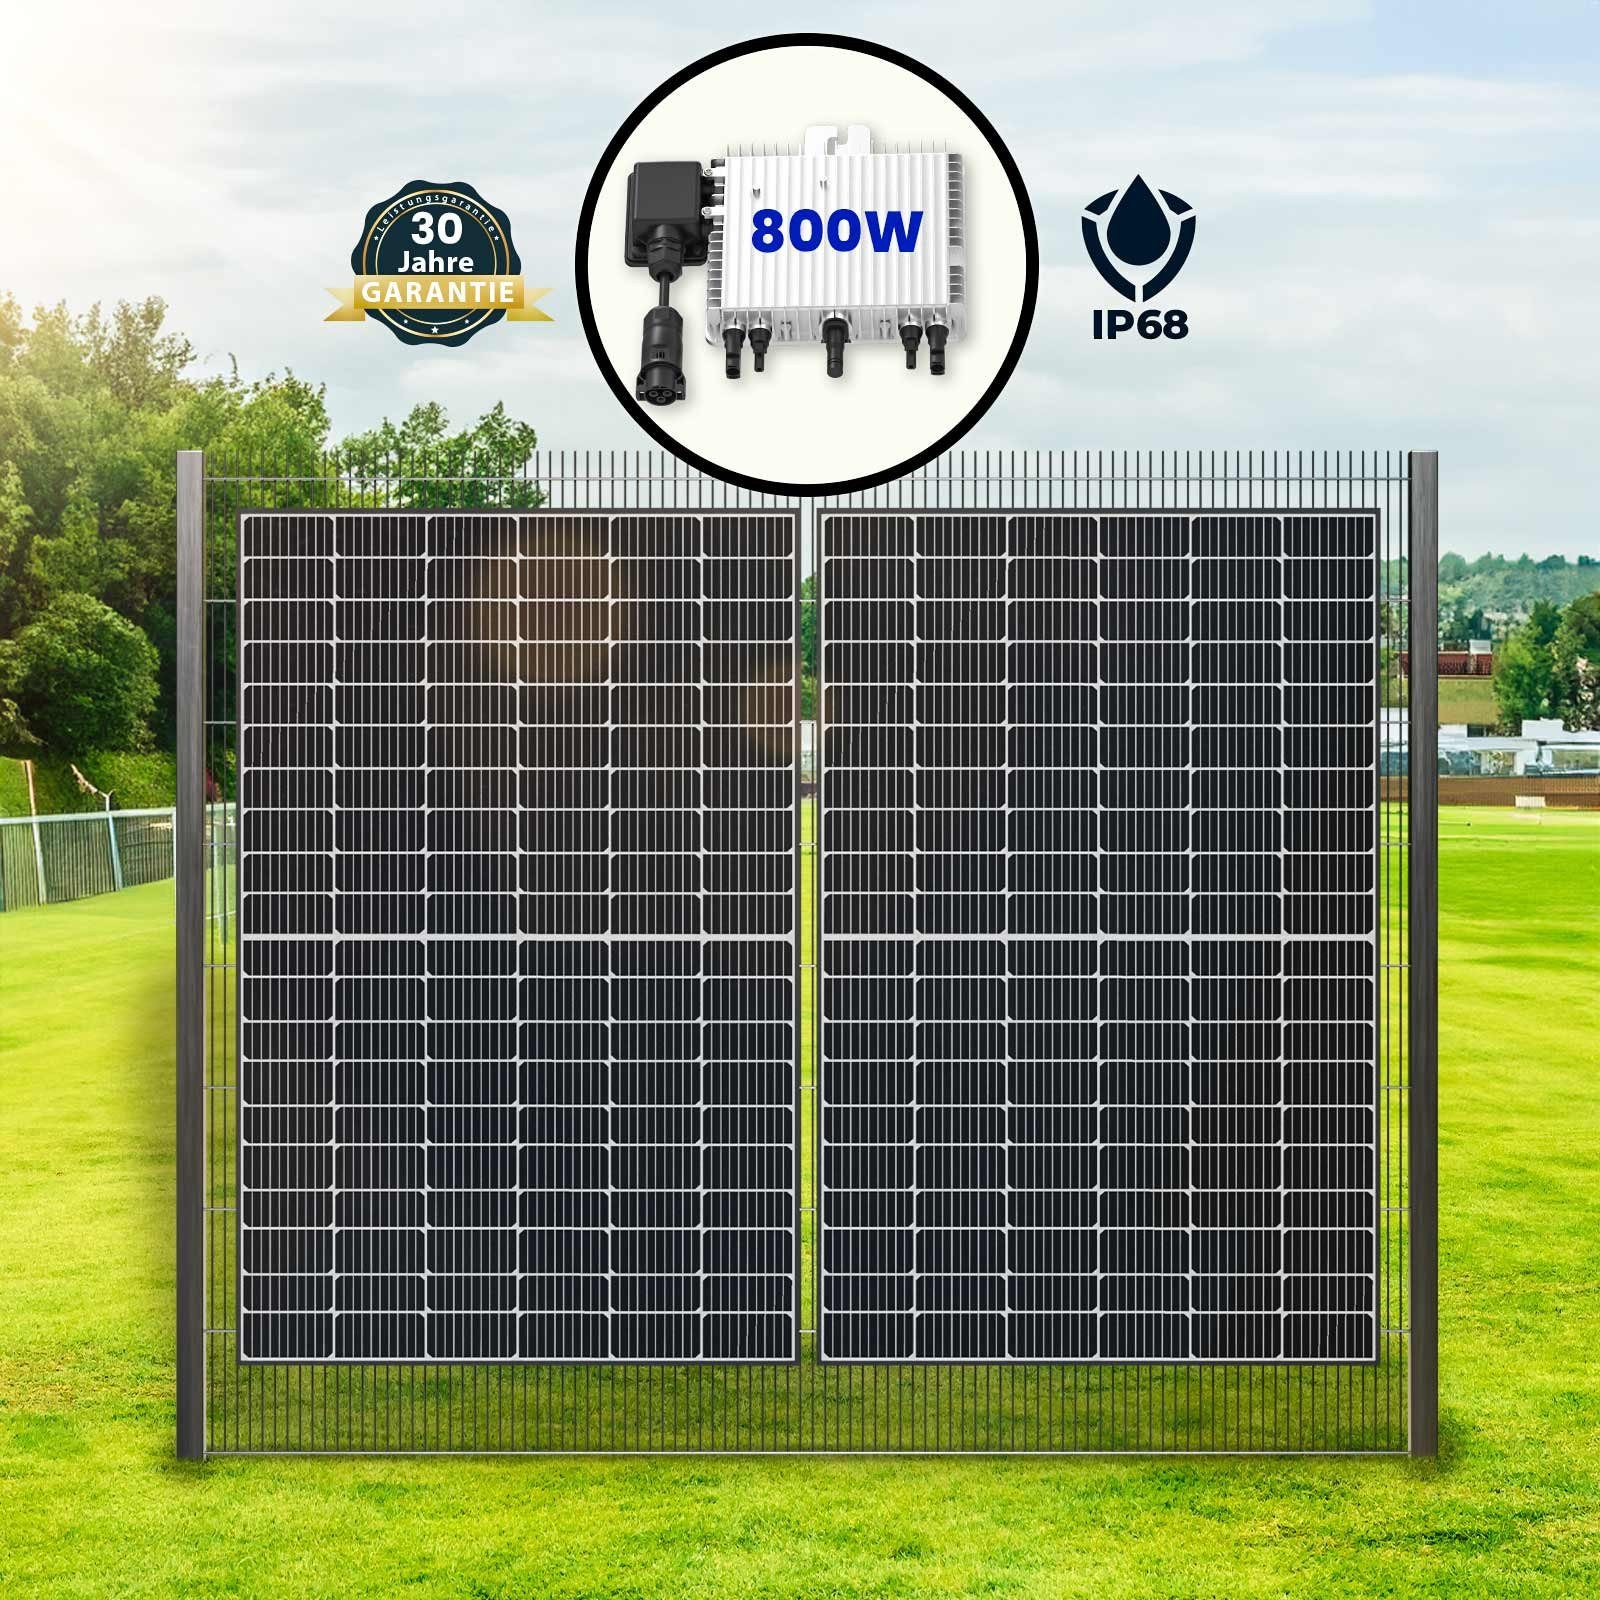 SOLAR-HOOK etm Zaun 1000W Bifazial Solarzaun-Set mit Deye 800W WiFi Wechselrichter, Montage-Set zur (Einseitig-Hochkant) Zaunbefestigung